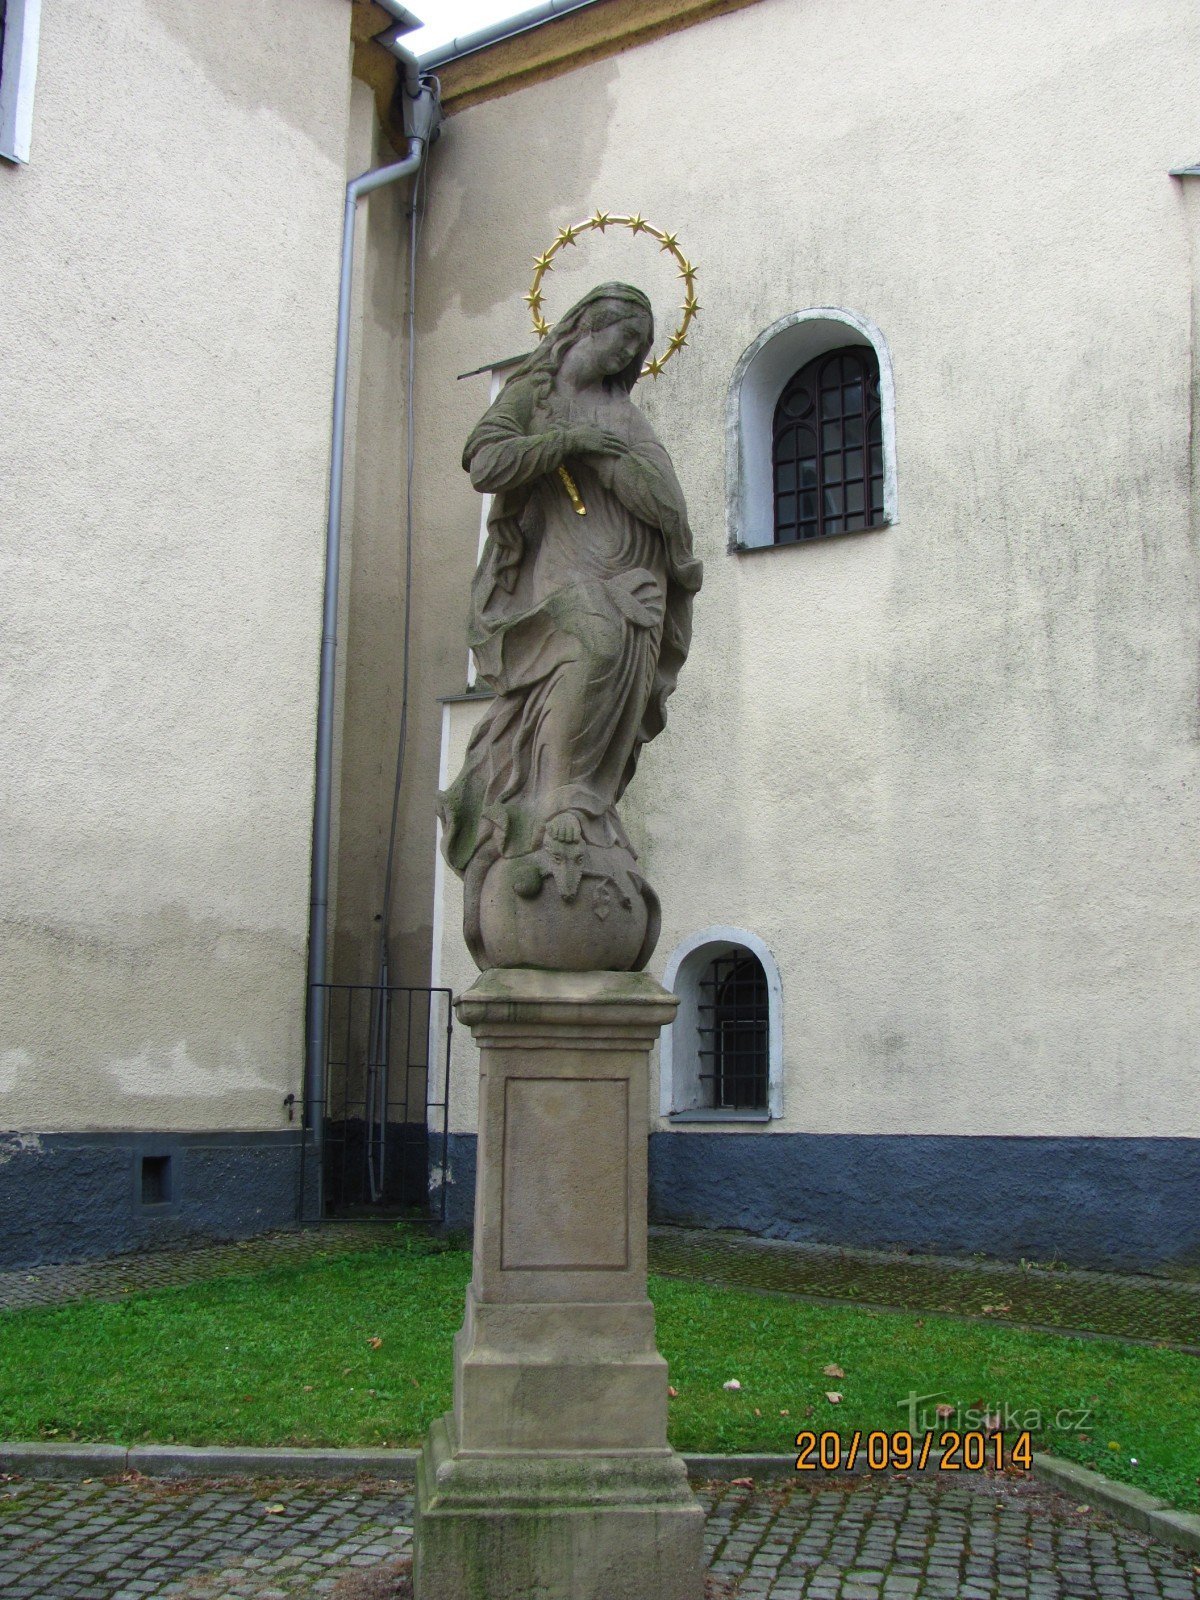 Άγαλμα της Παναγίας στην εκκλησία του Αγ. Η Kateřiny στο Klimkovice